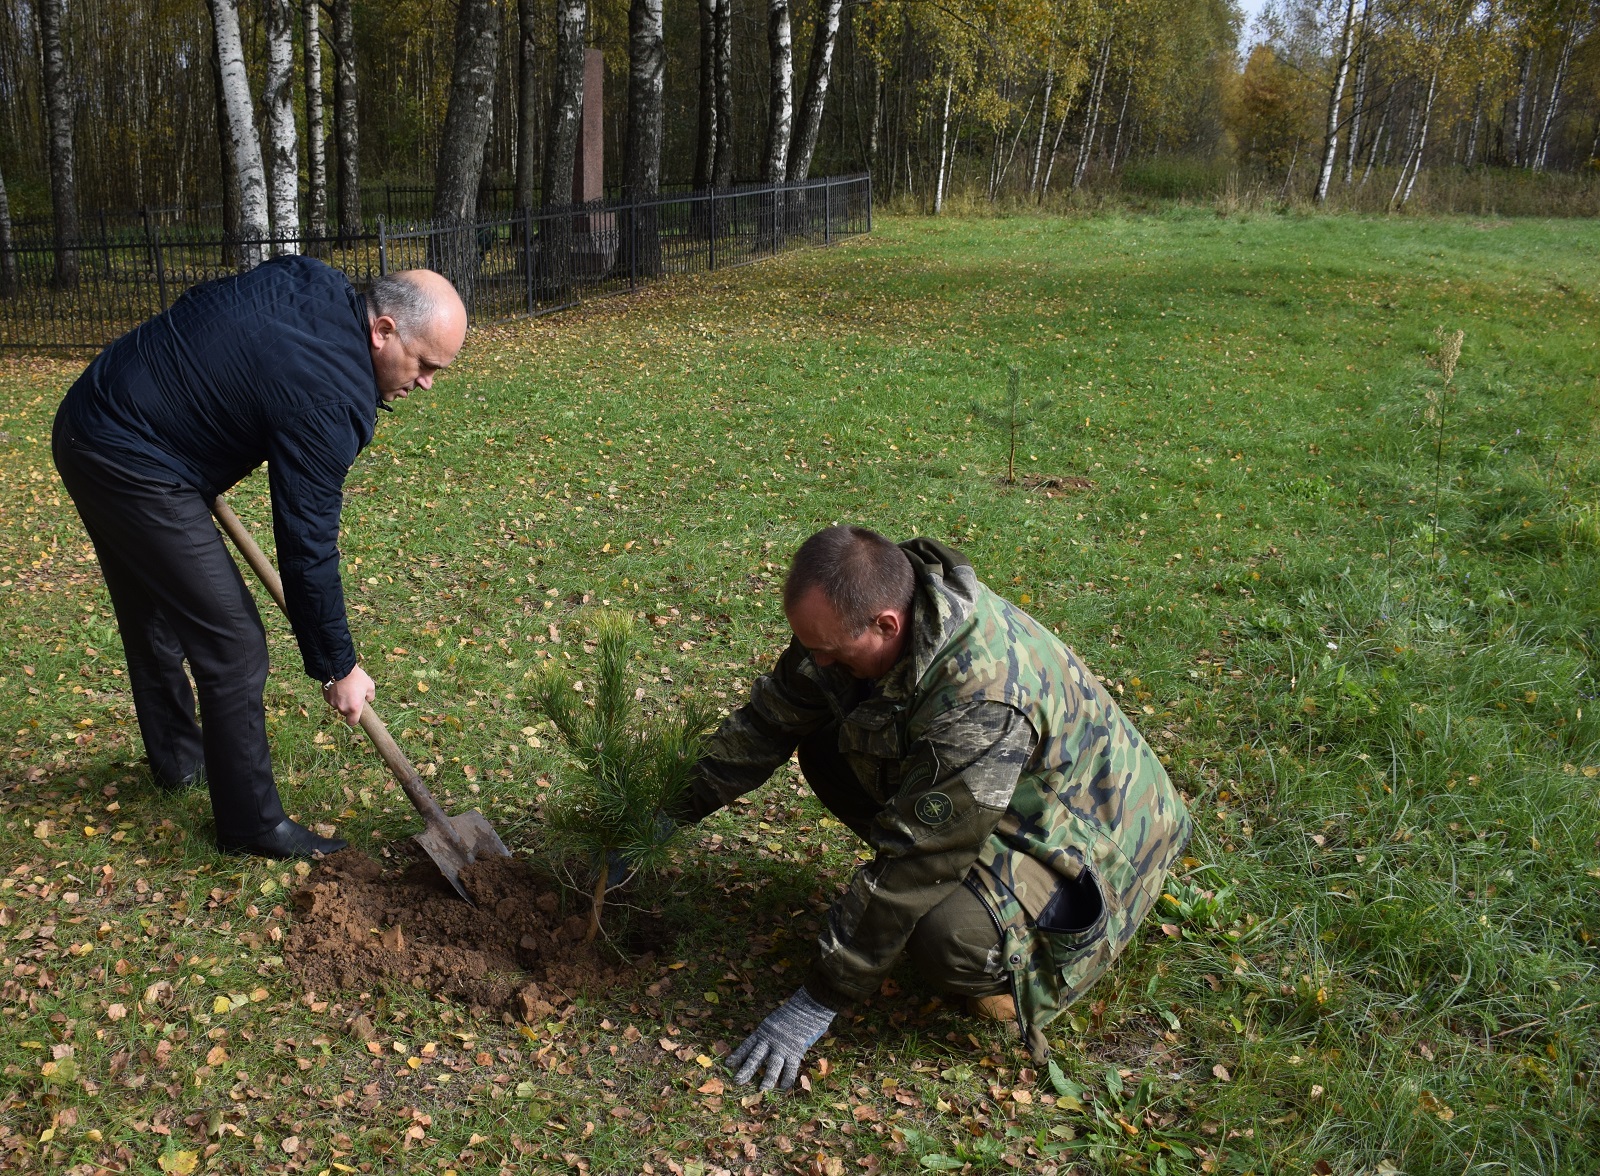 Всероссийская акция «Сохраним лес» прошла в Краснинском районе